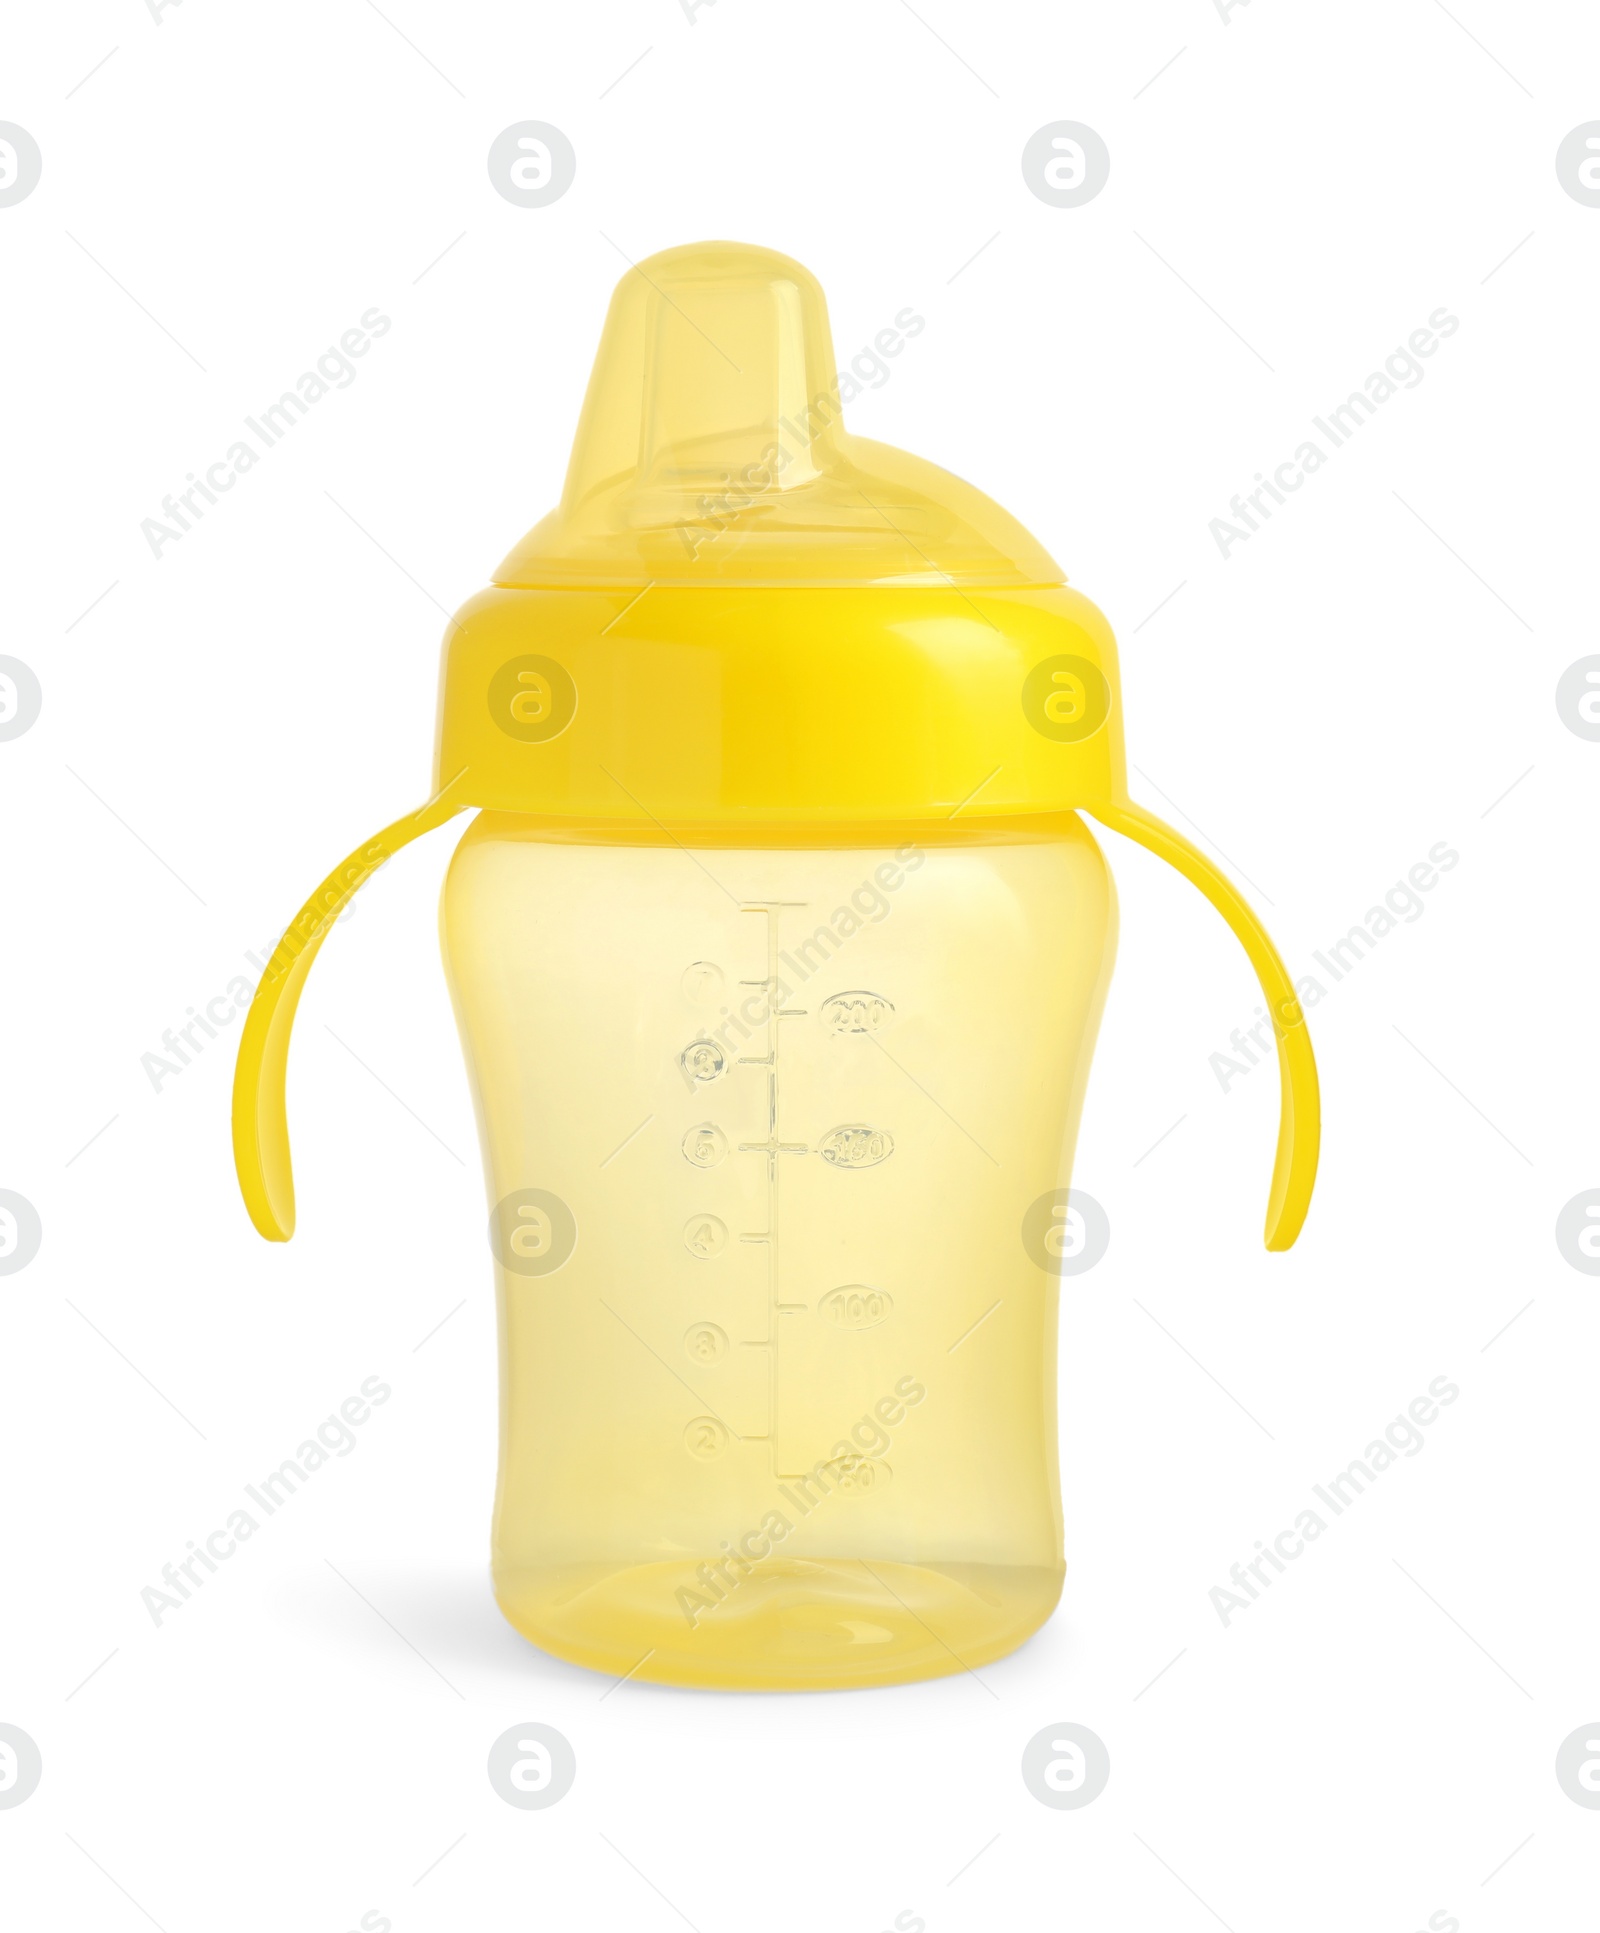 Photo of Empty yellow feeding bottle for infant formula isolated on white